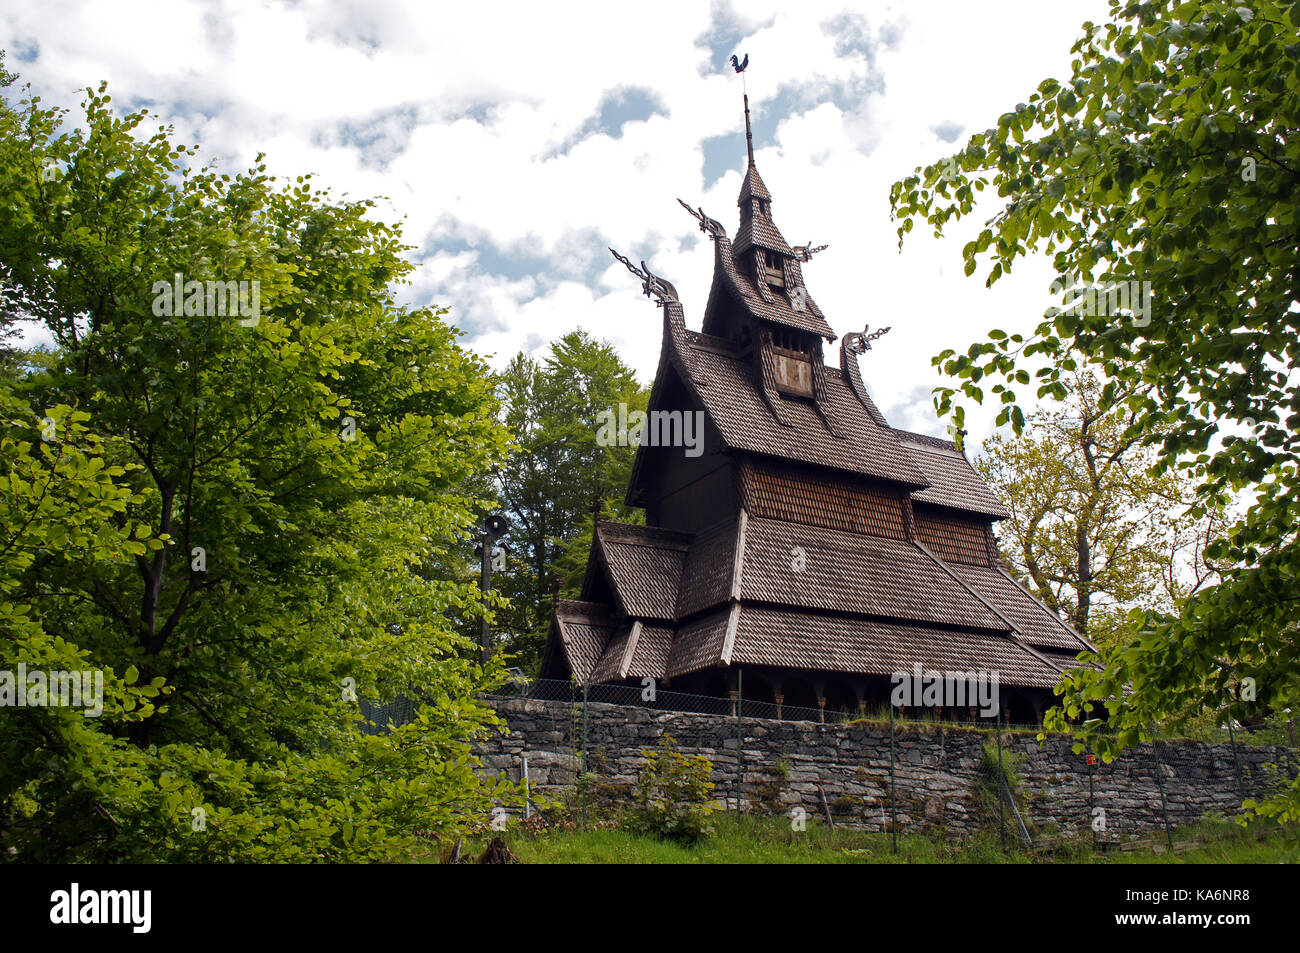 Fantoft stavkirke - chiesa in legno vicino Bergen, Norvegia, circondata da alberi, architettura vichinga Foto Stock